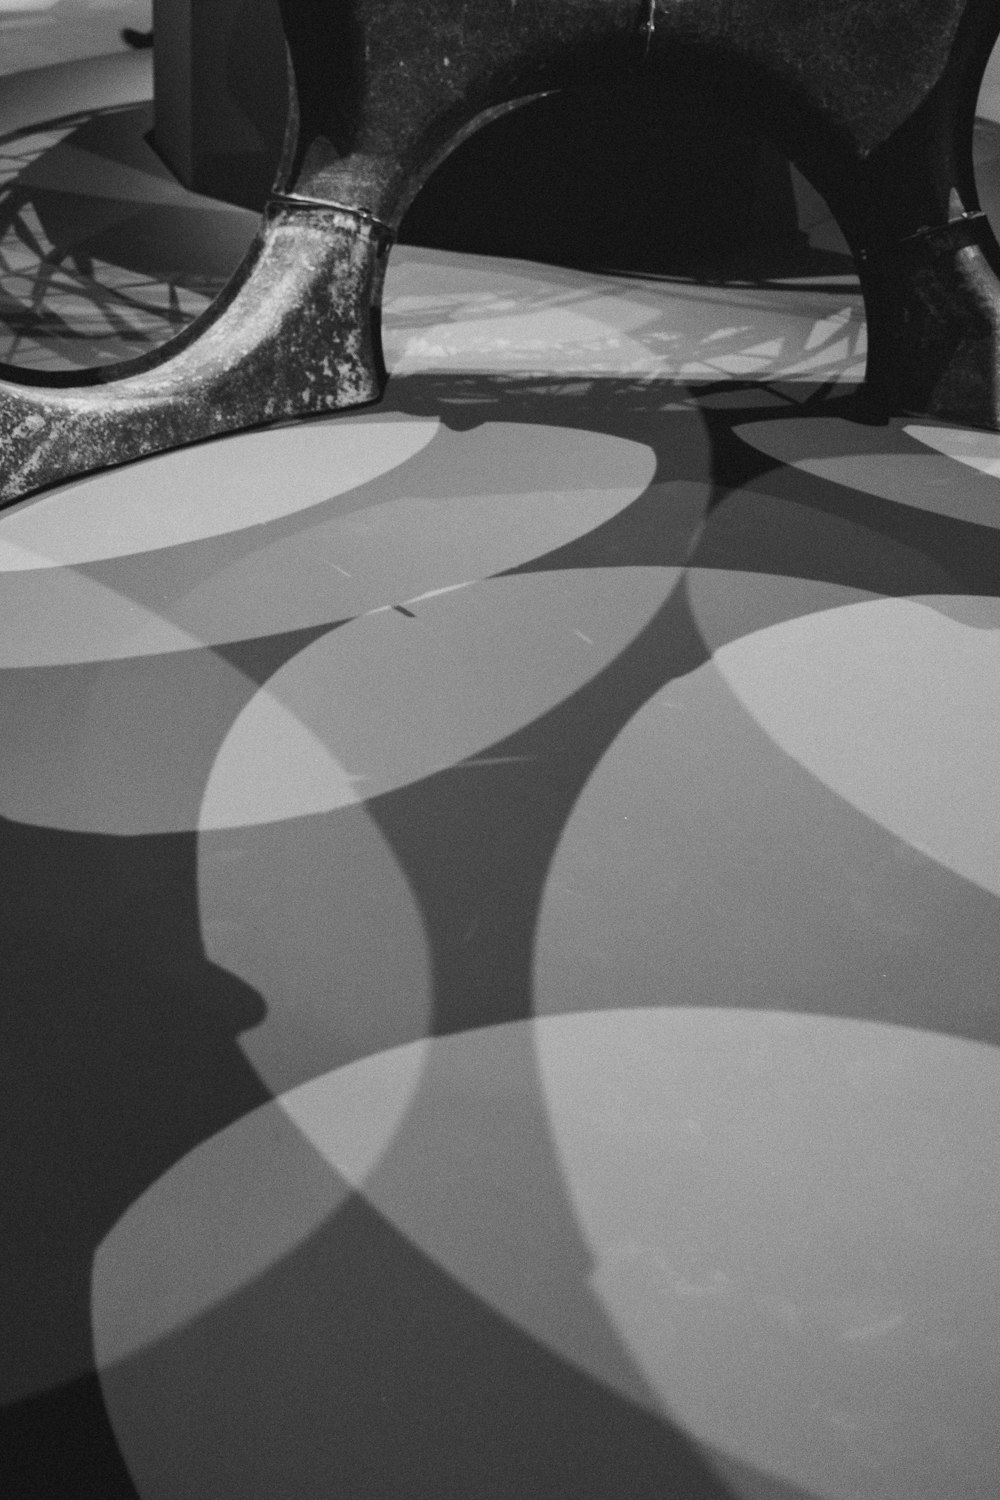 Una foto in bianco e nero di una panchina in una stanza